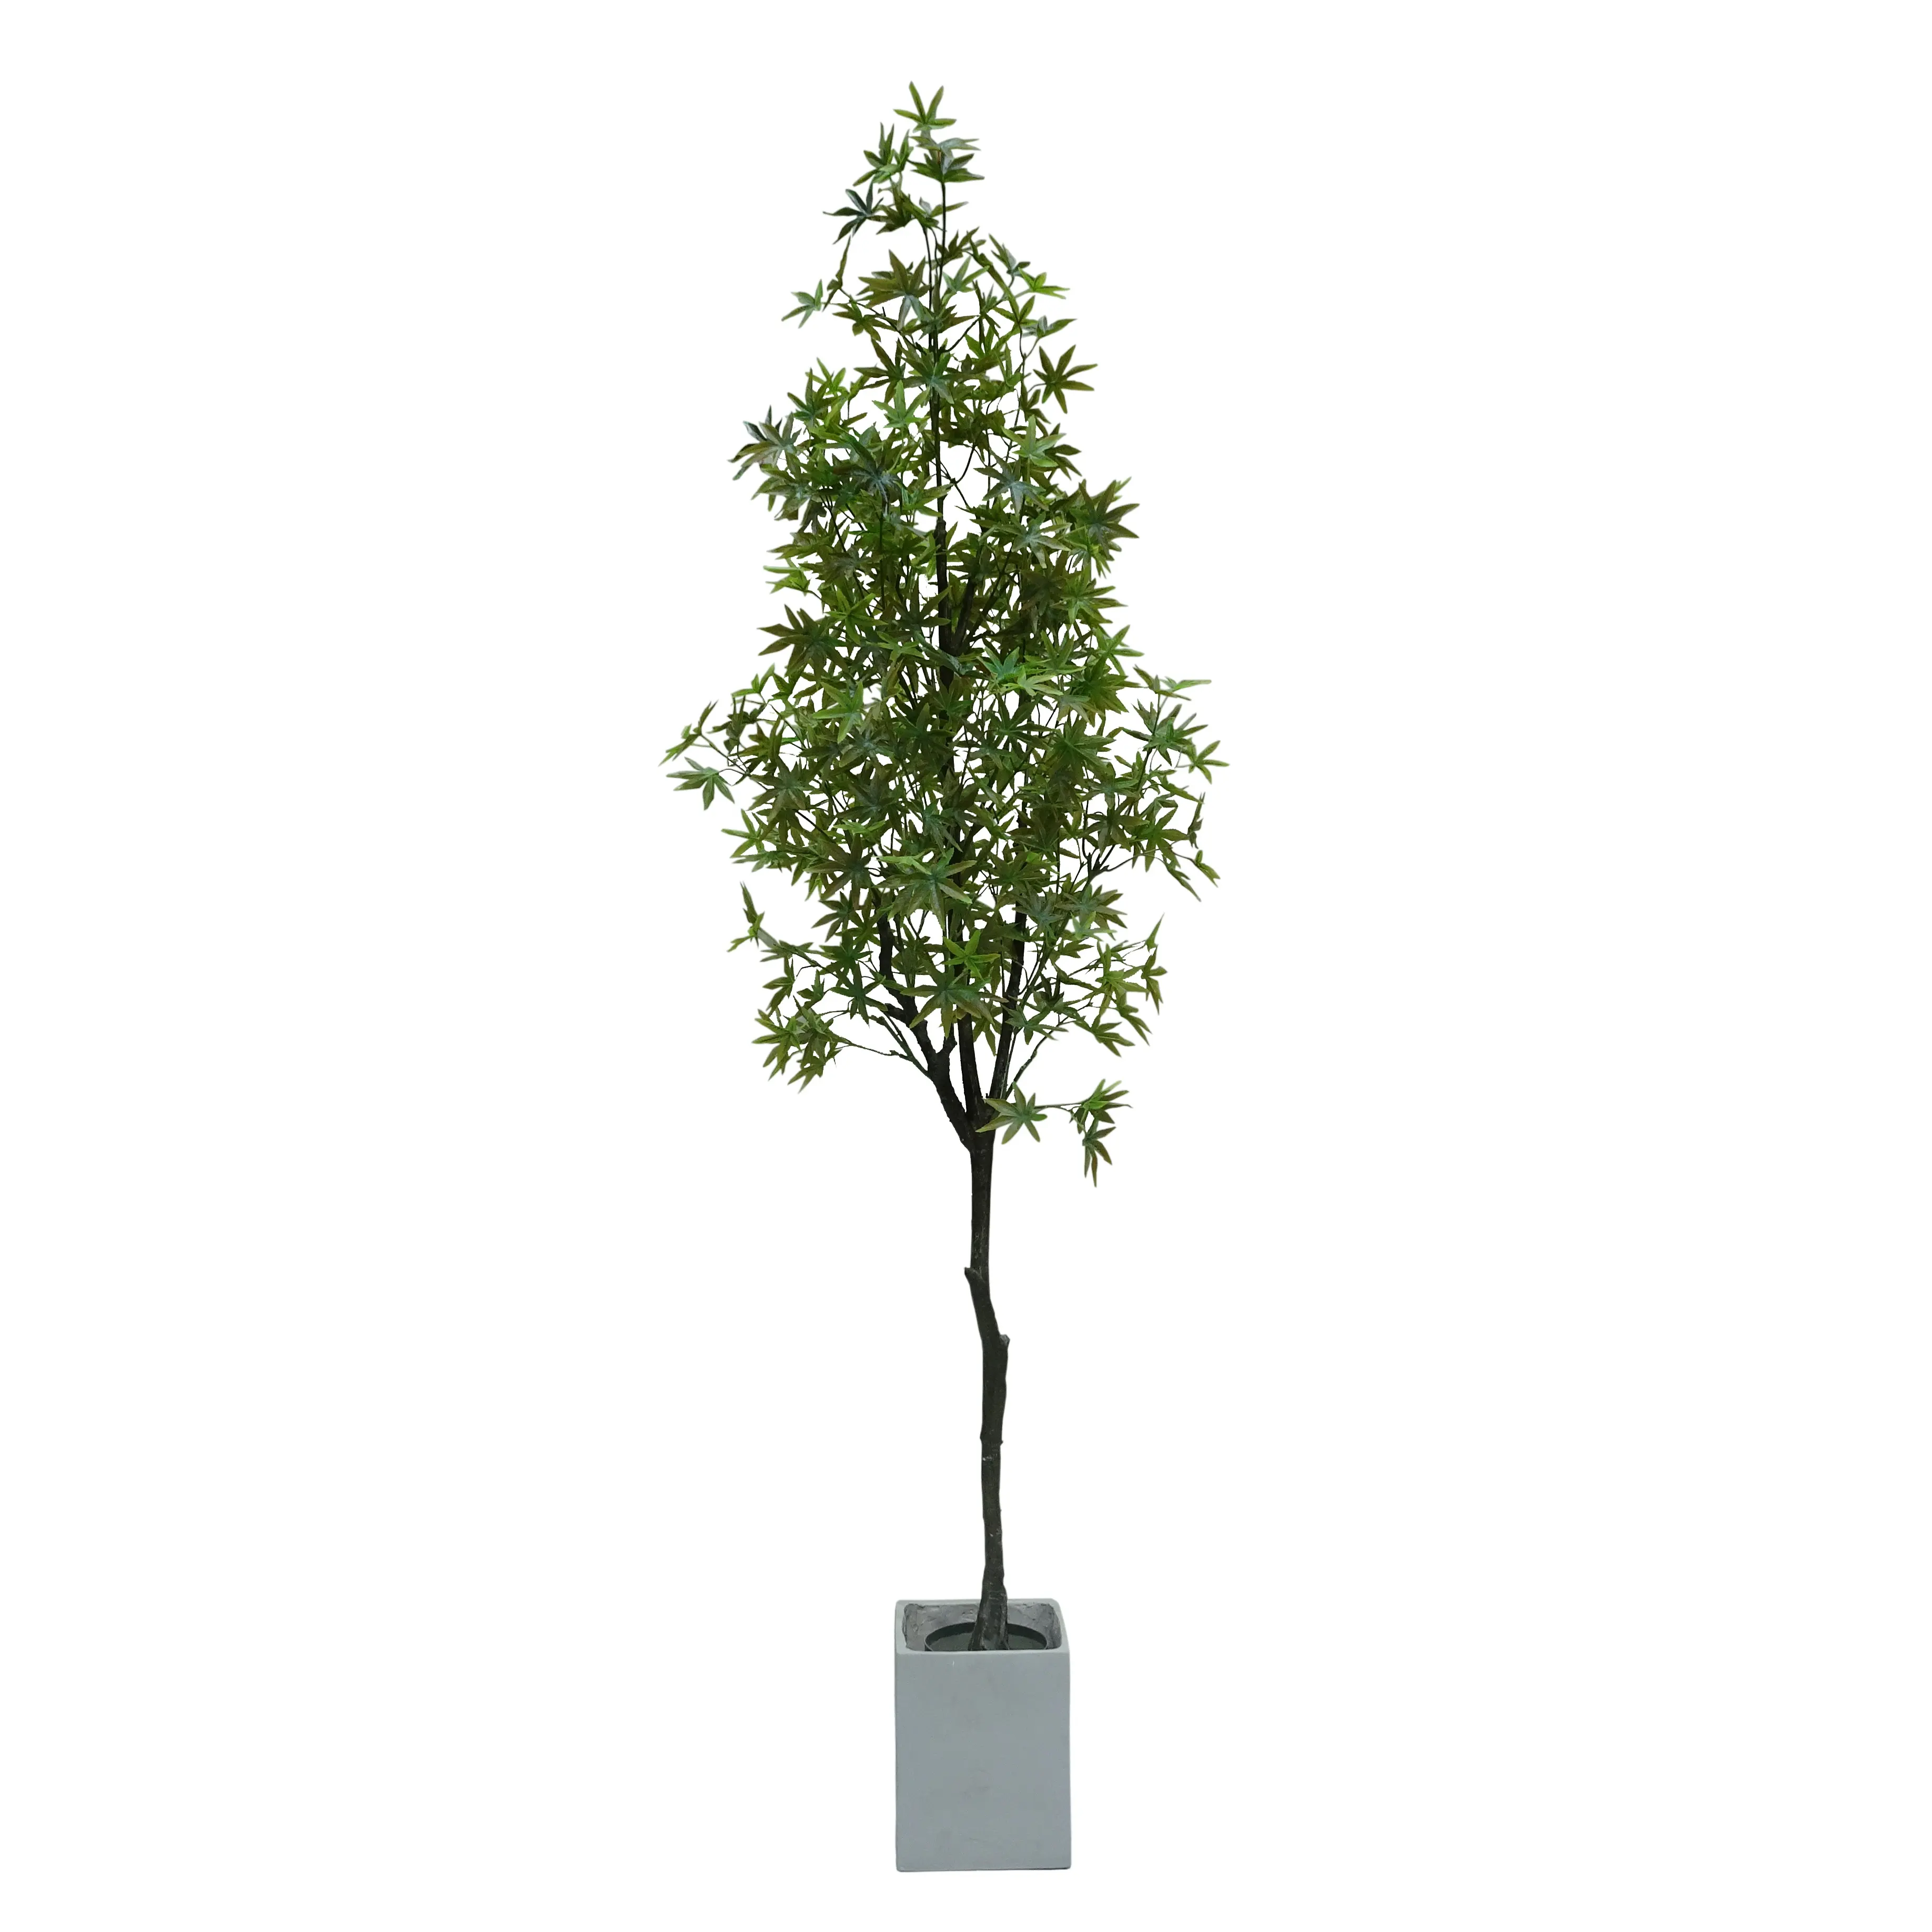 Alta qualidade de alta qualidade de alto nível de produção de plantas decorativas de interior fábrica direta modelos quente simulação maple tree